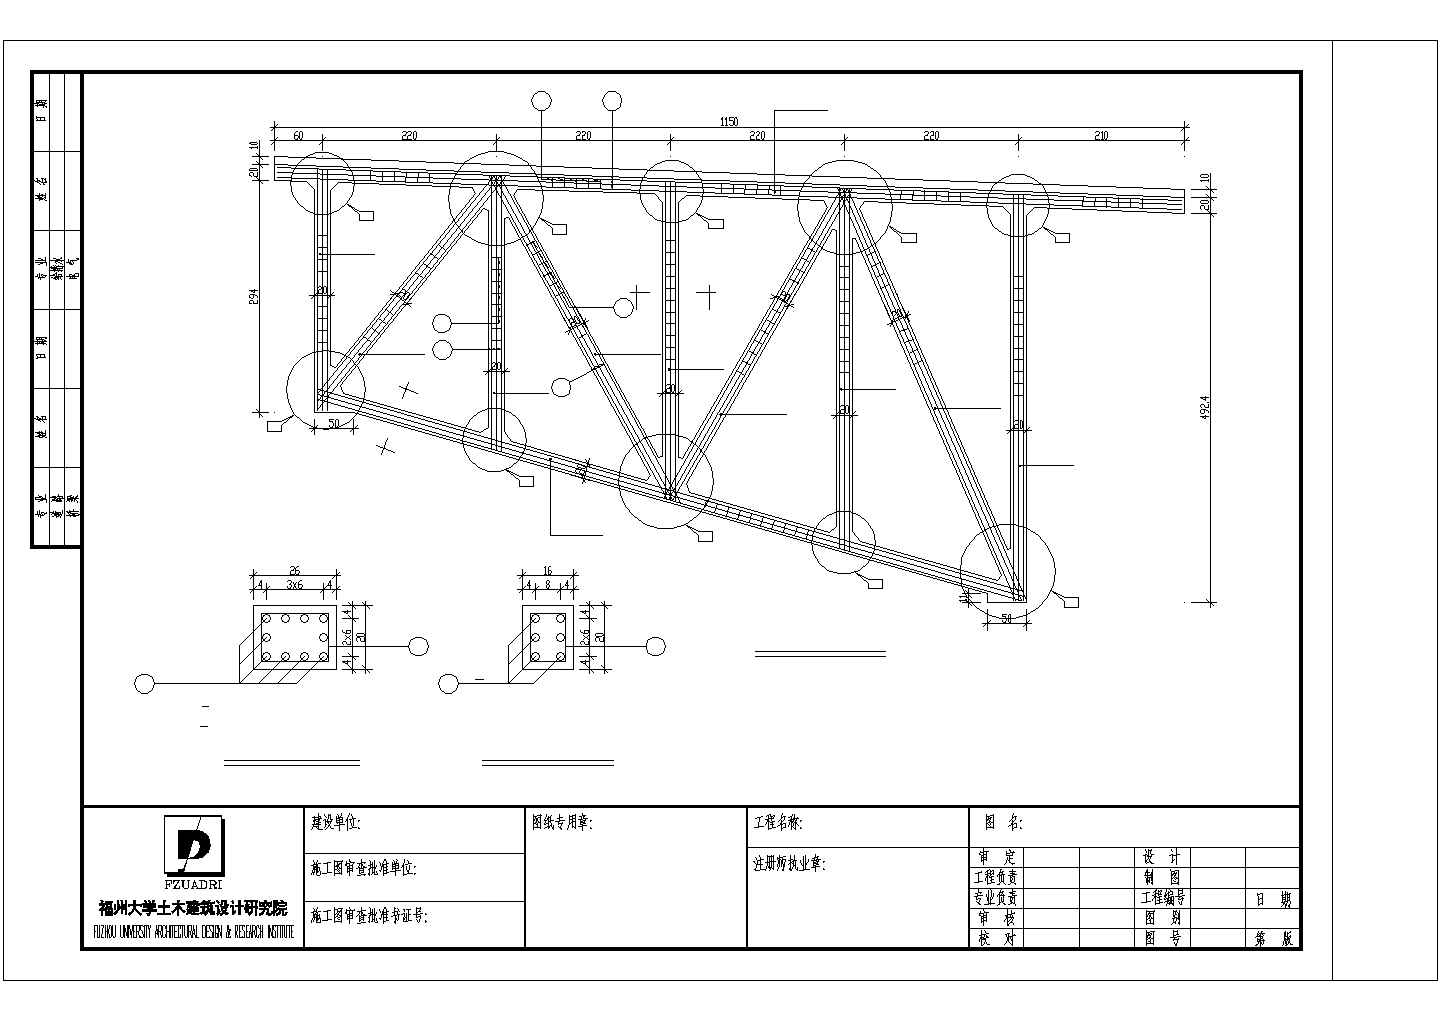 桥台桁架弦杆钢筋设计图